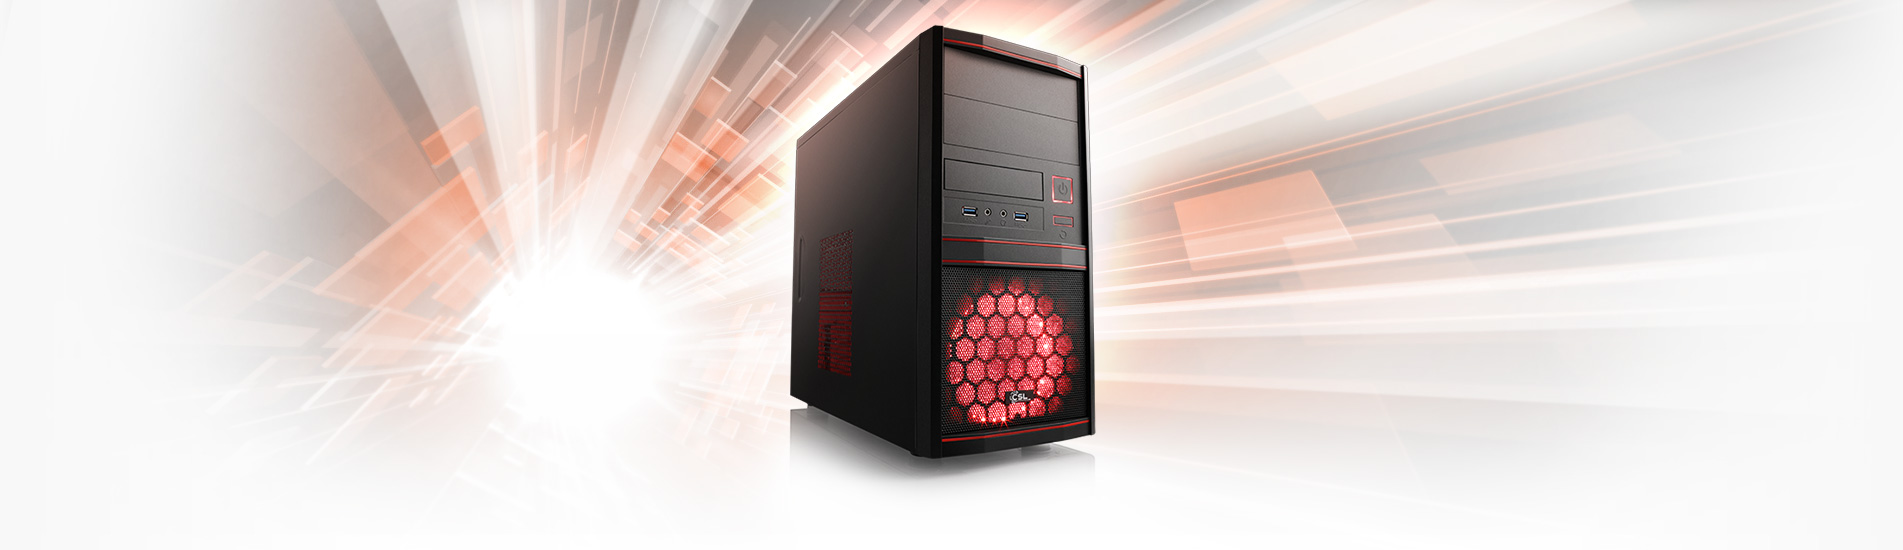 Ein starker AMD Ryzen™ 5 PC mit 16 GB RAM für Office, 4K-Multimedia und eSports-Gaming in Full HD.